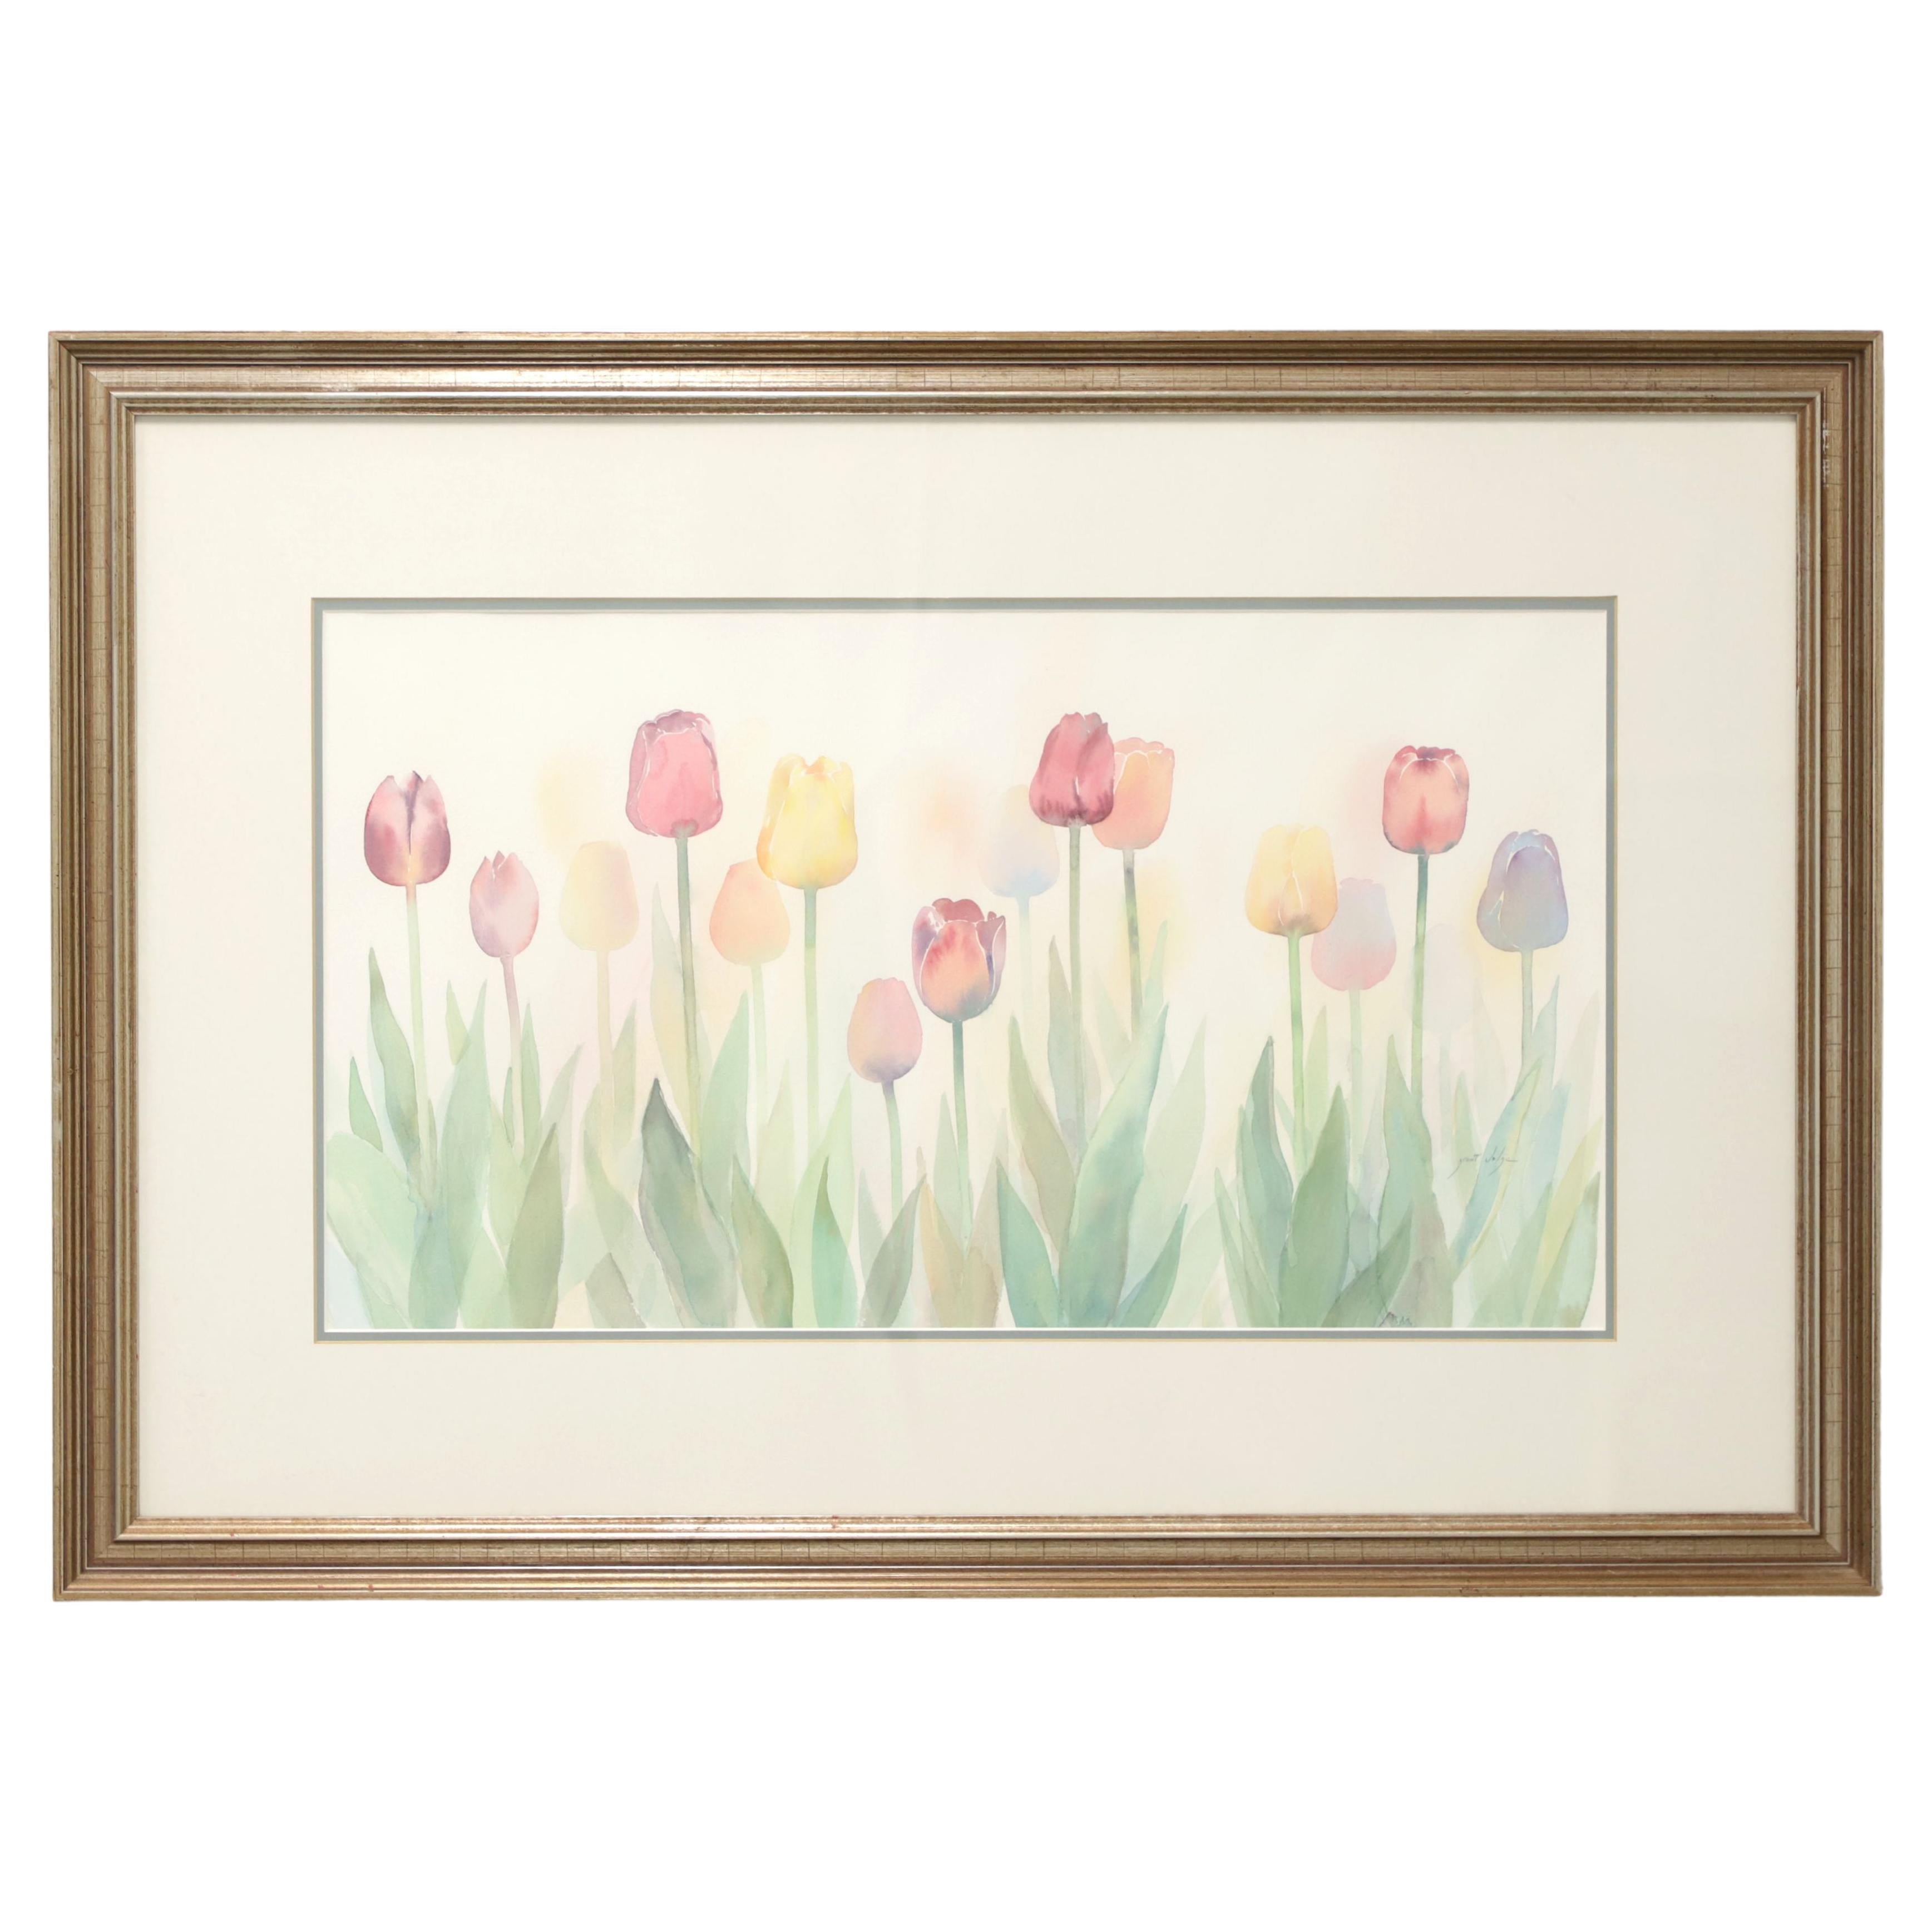 Aquarelle originale du 20ème siècle - Tulips de printemps - Signé Grant Dolge